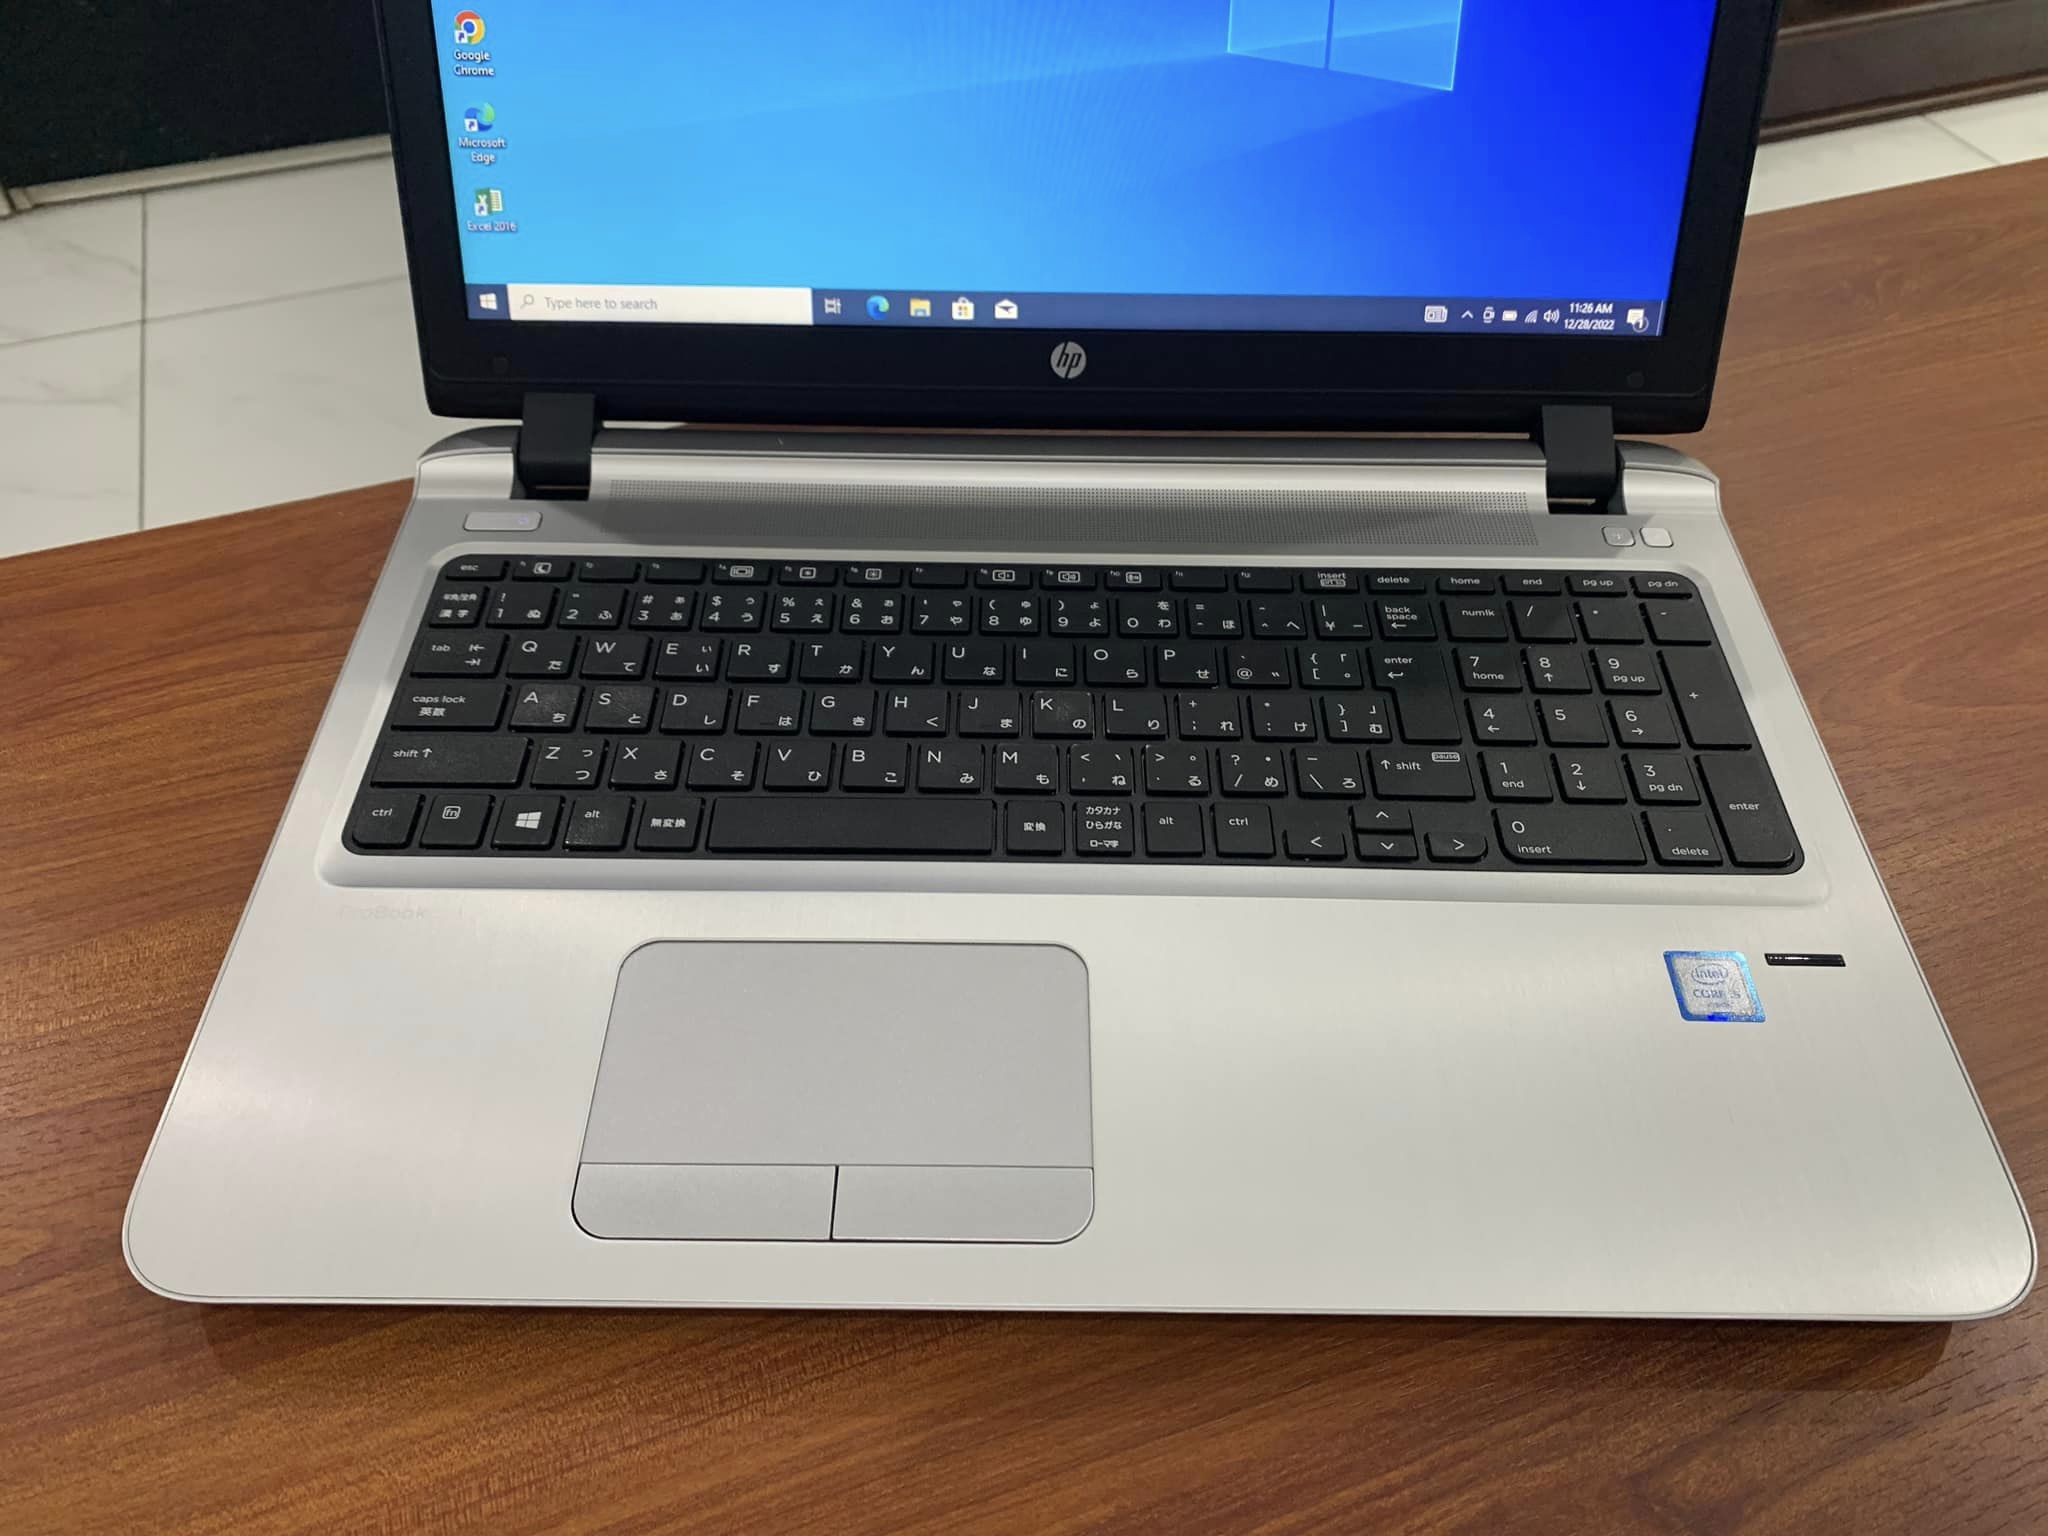 Laptop HP Probook 450-G3: i5 6200, Ram 8G